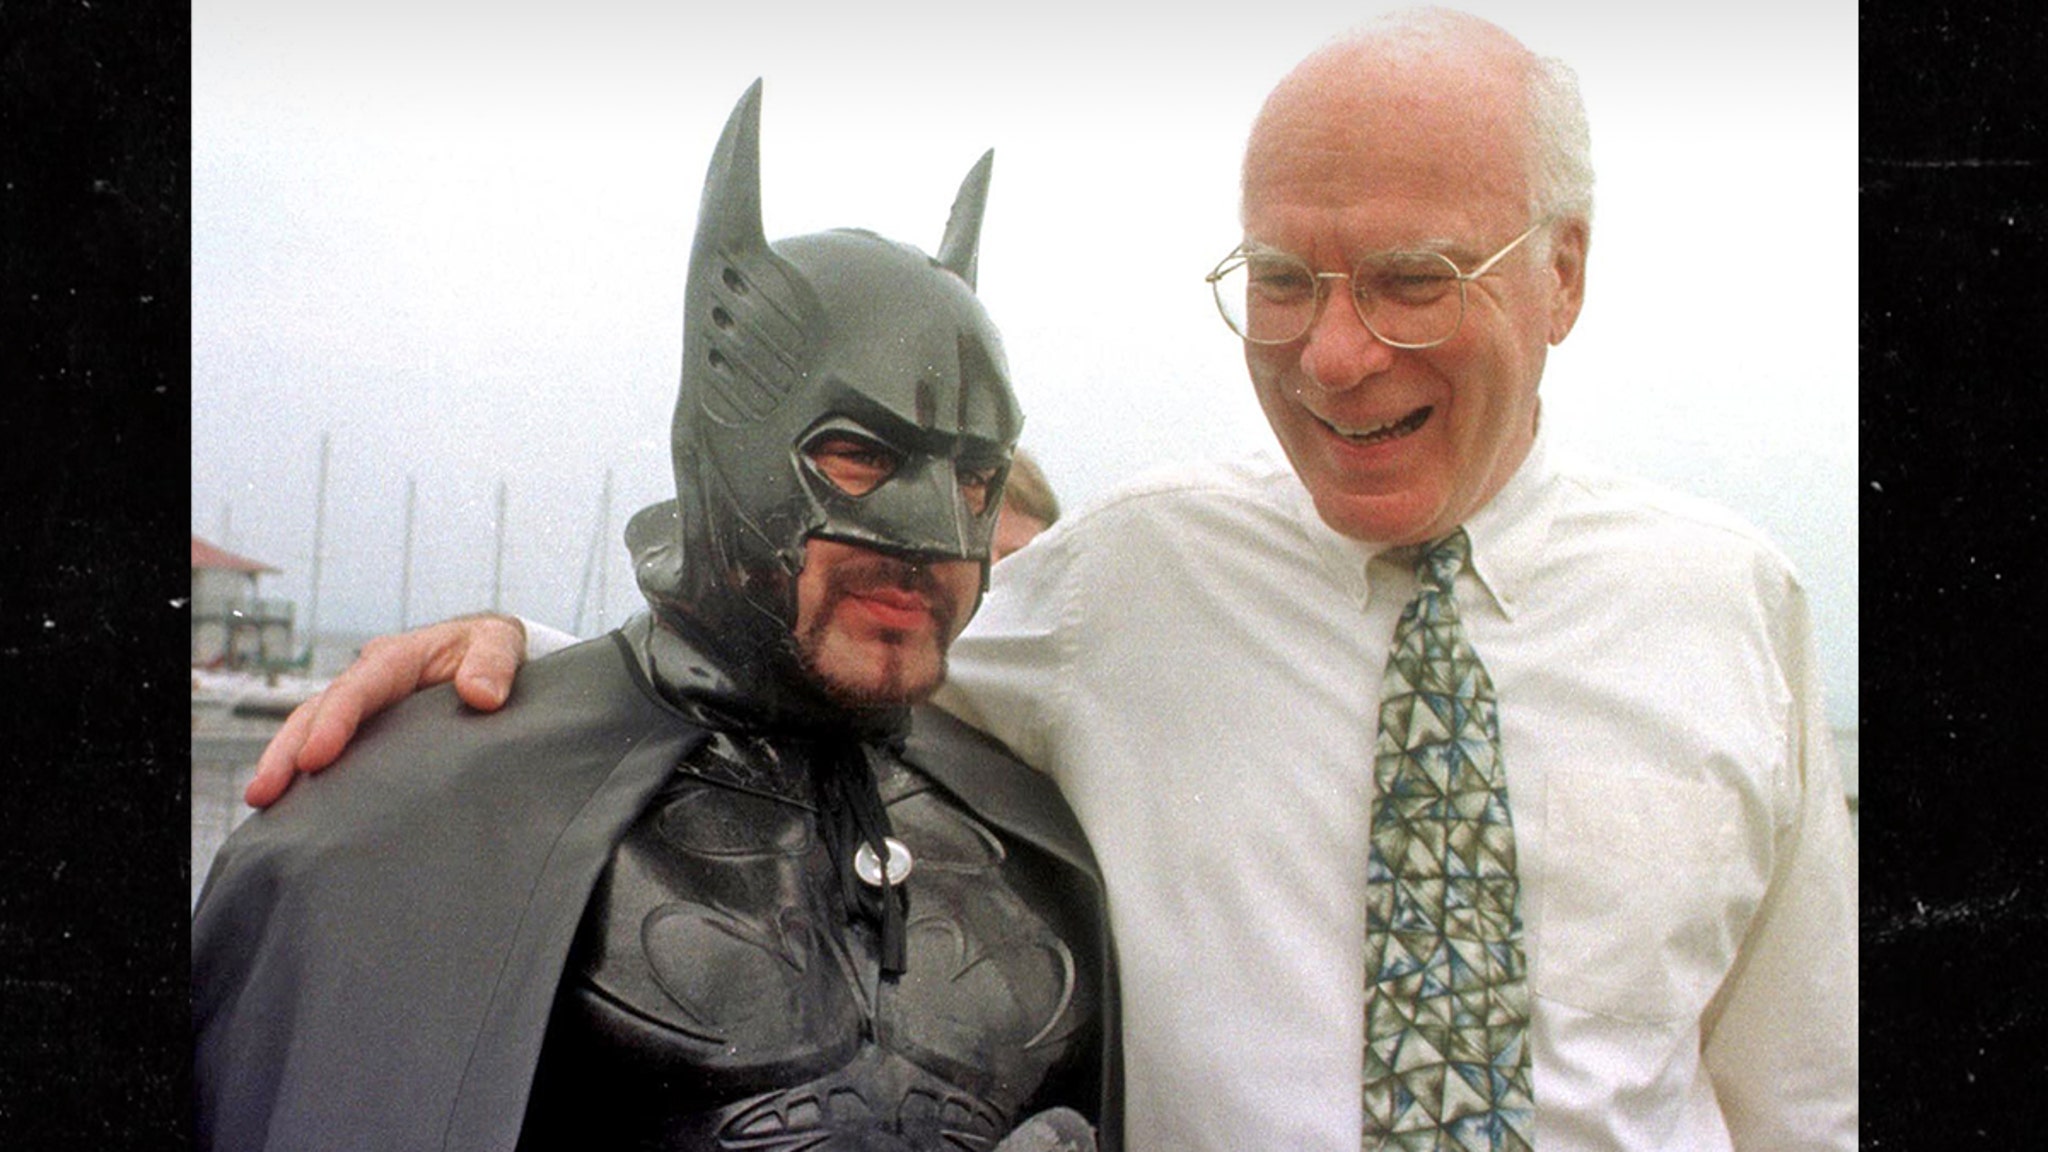 New Pro Tempore Senate Patrick Leahy participated in 5 Batman films